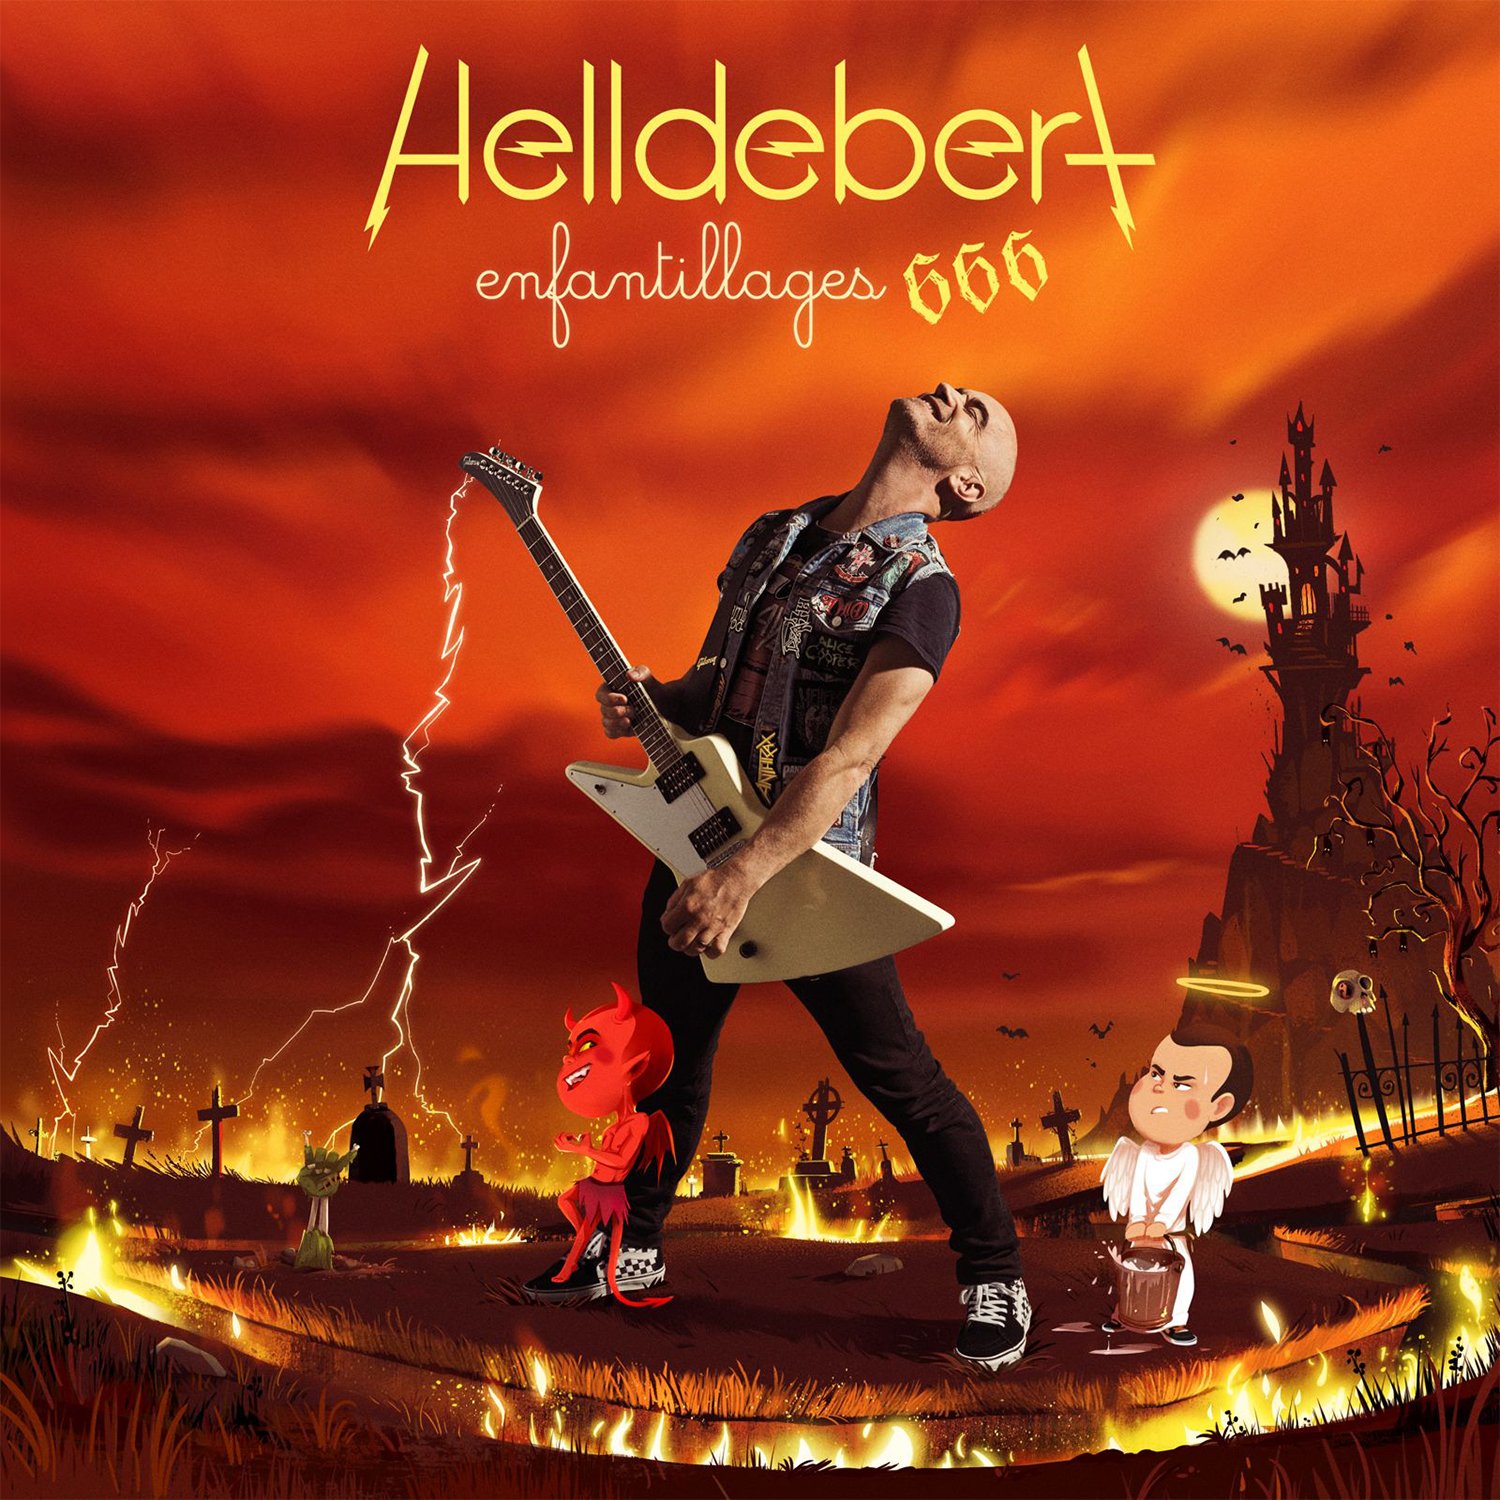 Visuel du nouveau single « Seum 51 », extrait du nouveau album « Helldebert » d'Aldebert